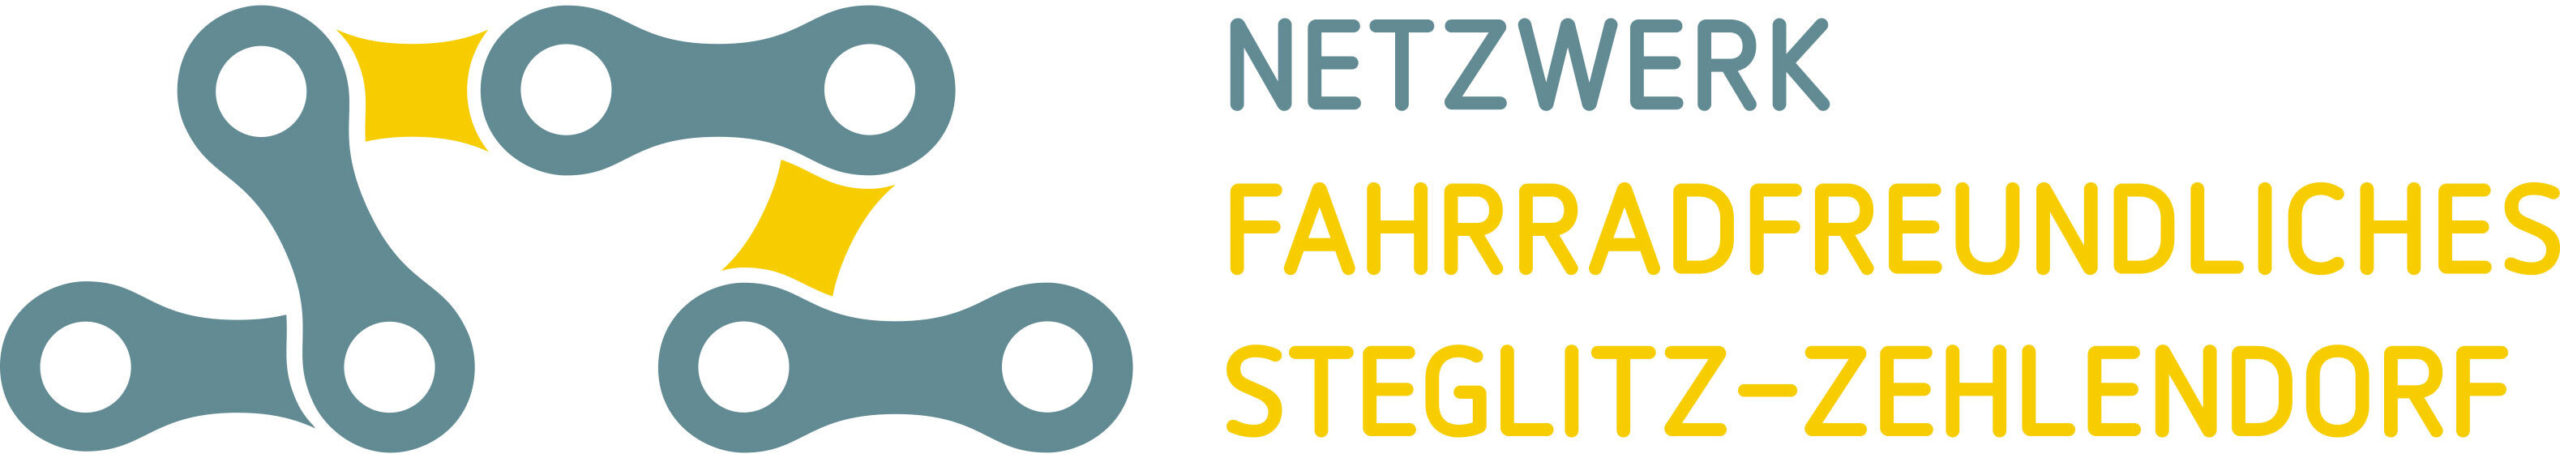 Netzwerk fahrradfreundliches Steglitz-Zehlendorf